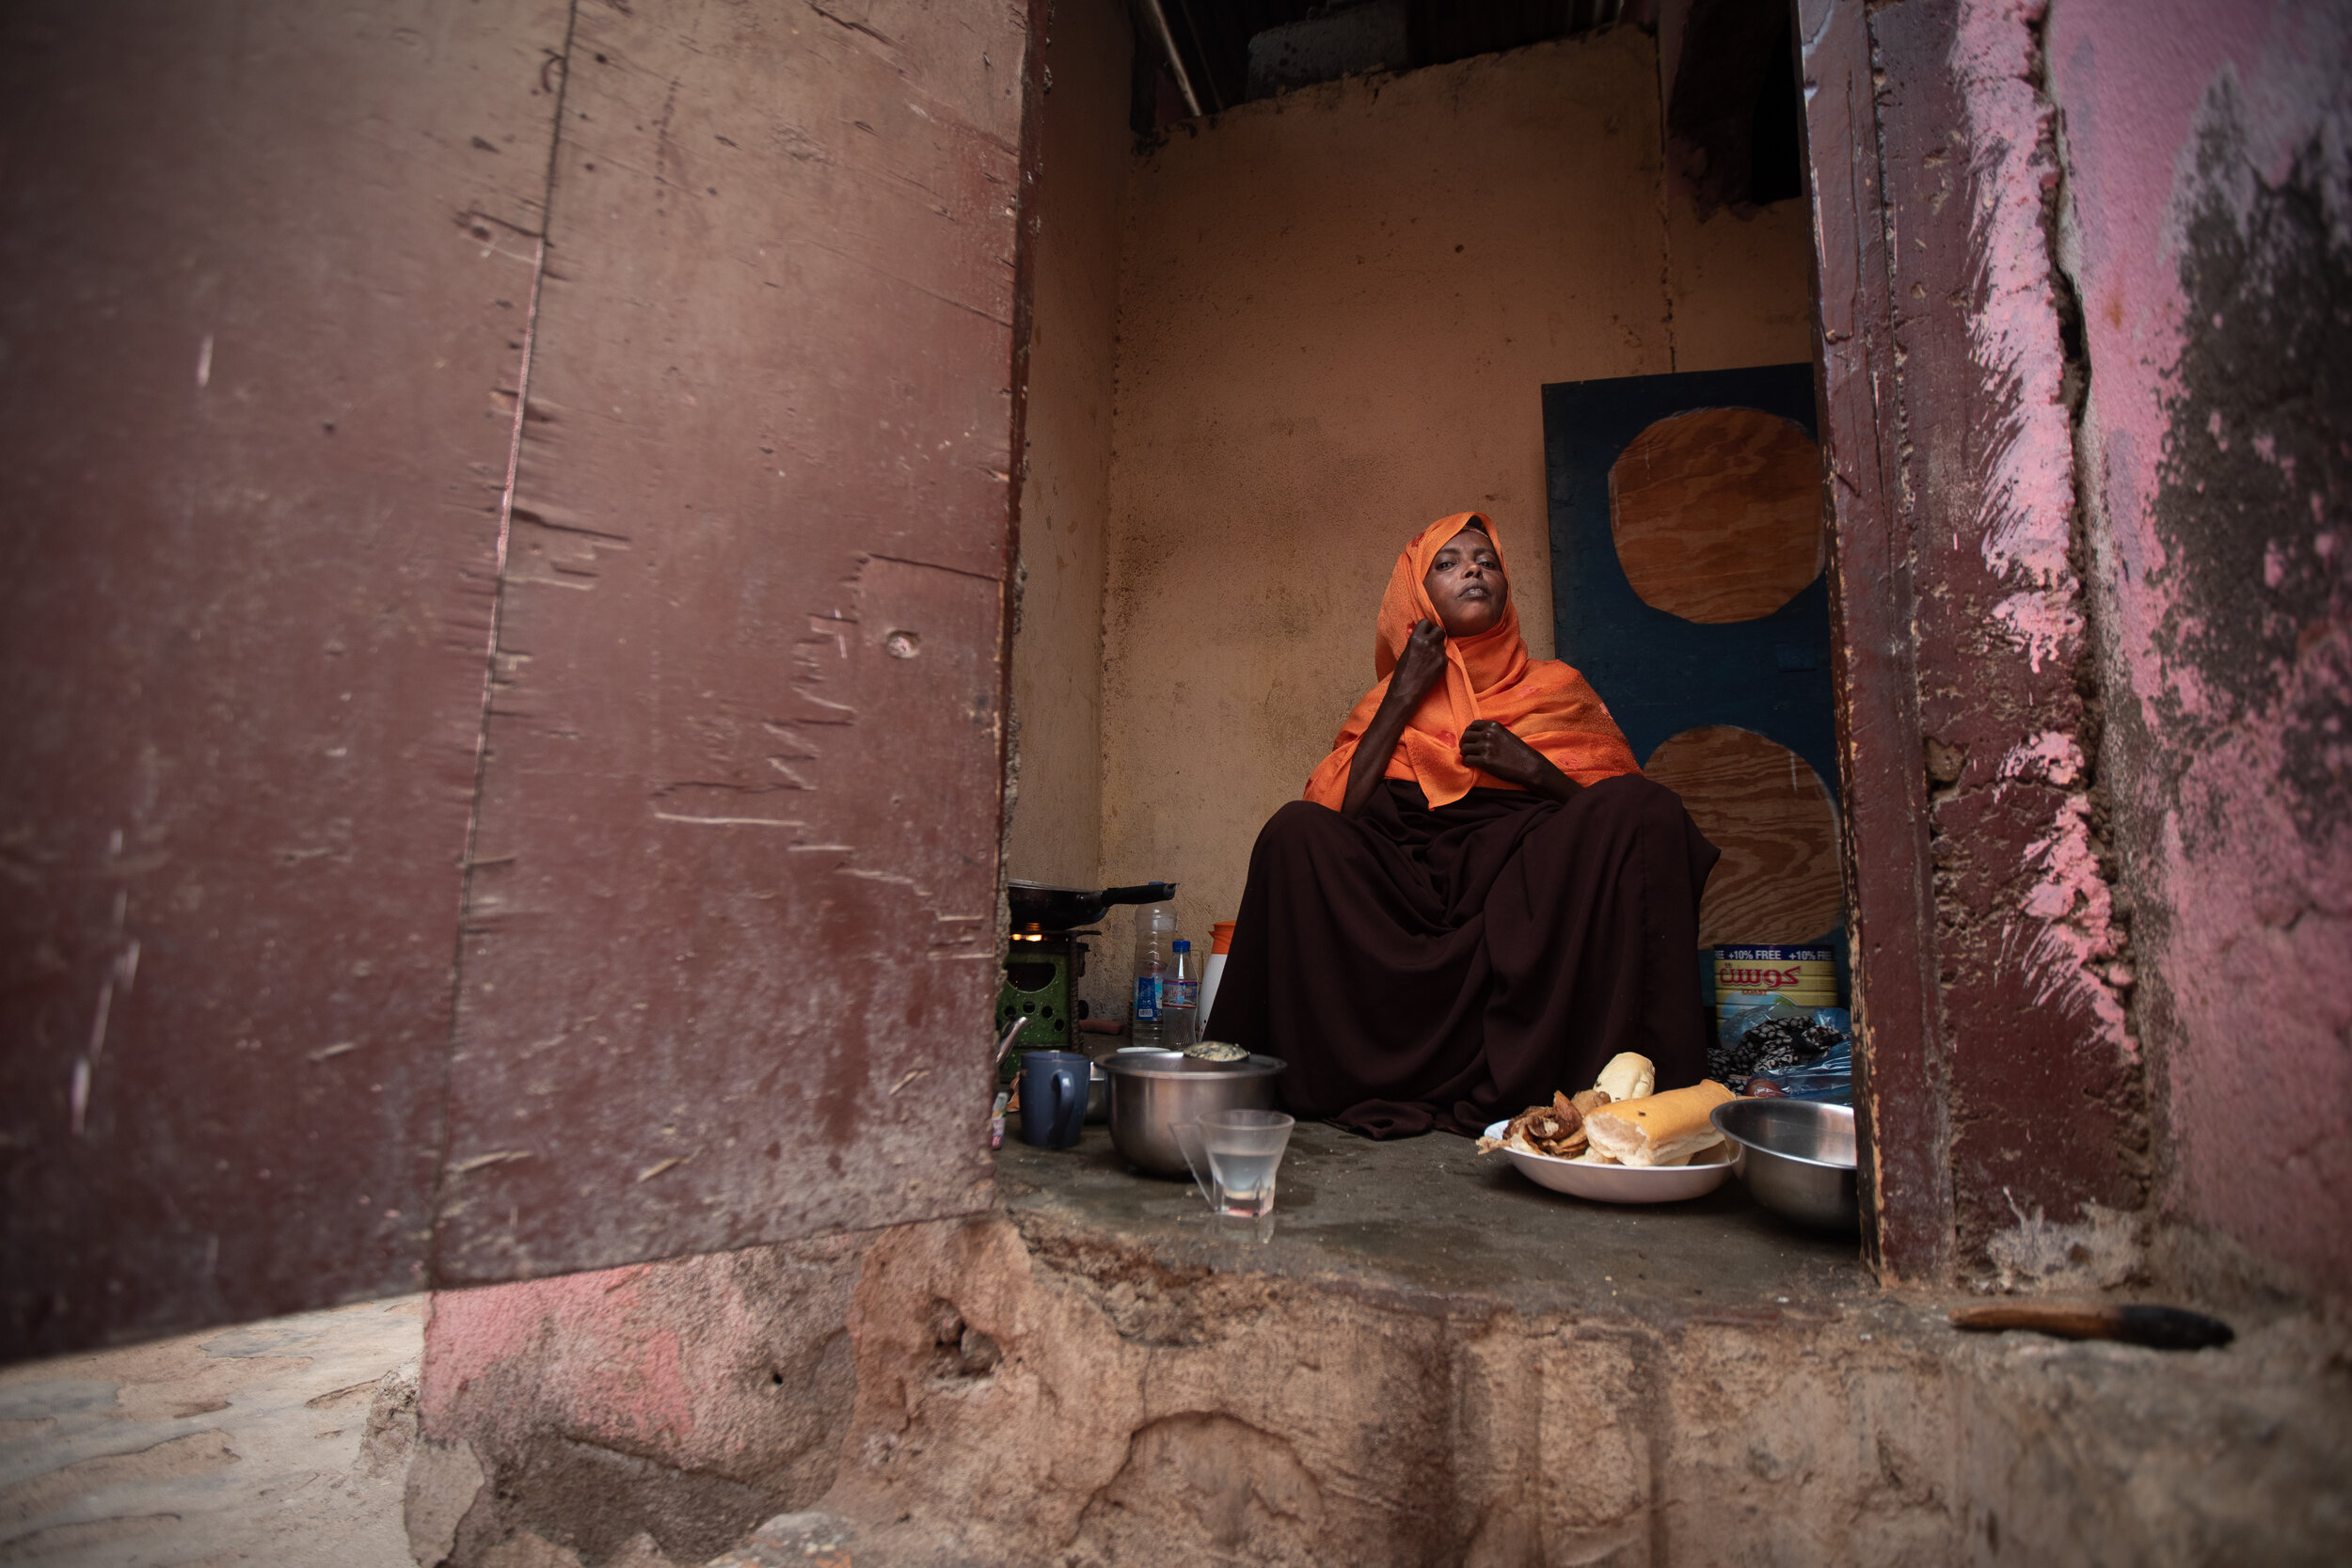  Saada Tawalaneh Assoweh preparing lunch for her children. Djibouti city, 2019 